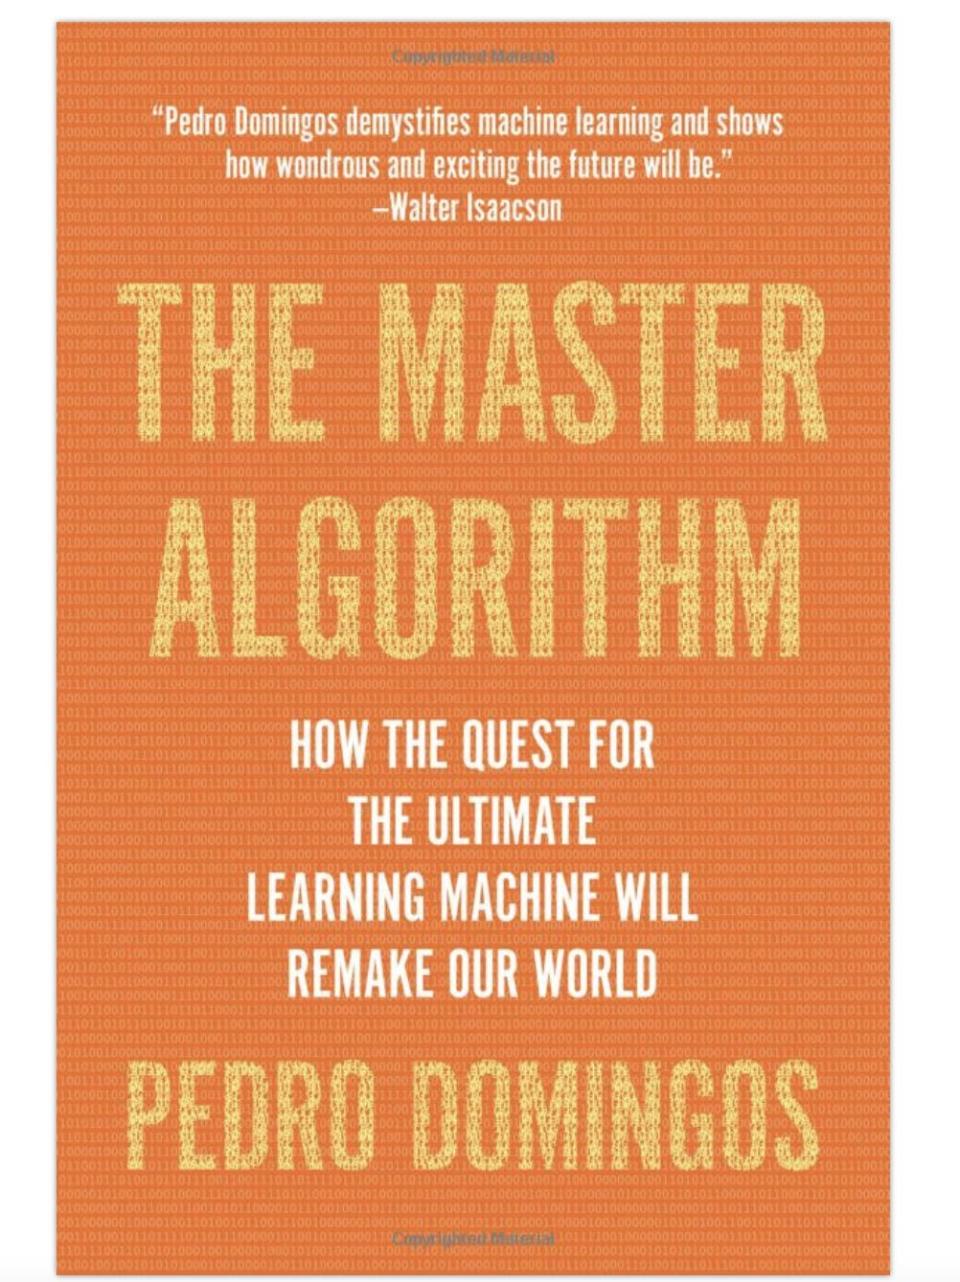 The Master Algorithm